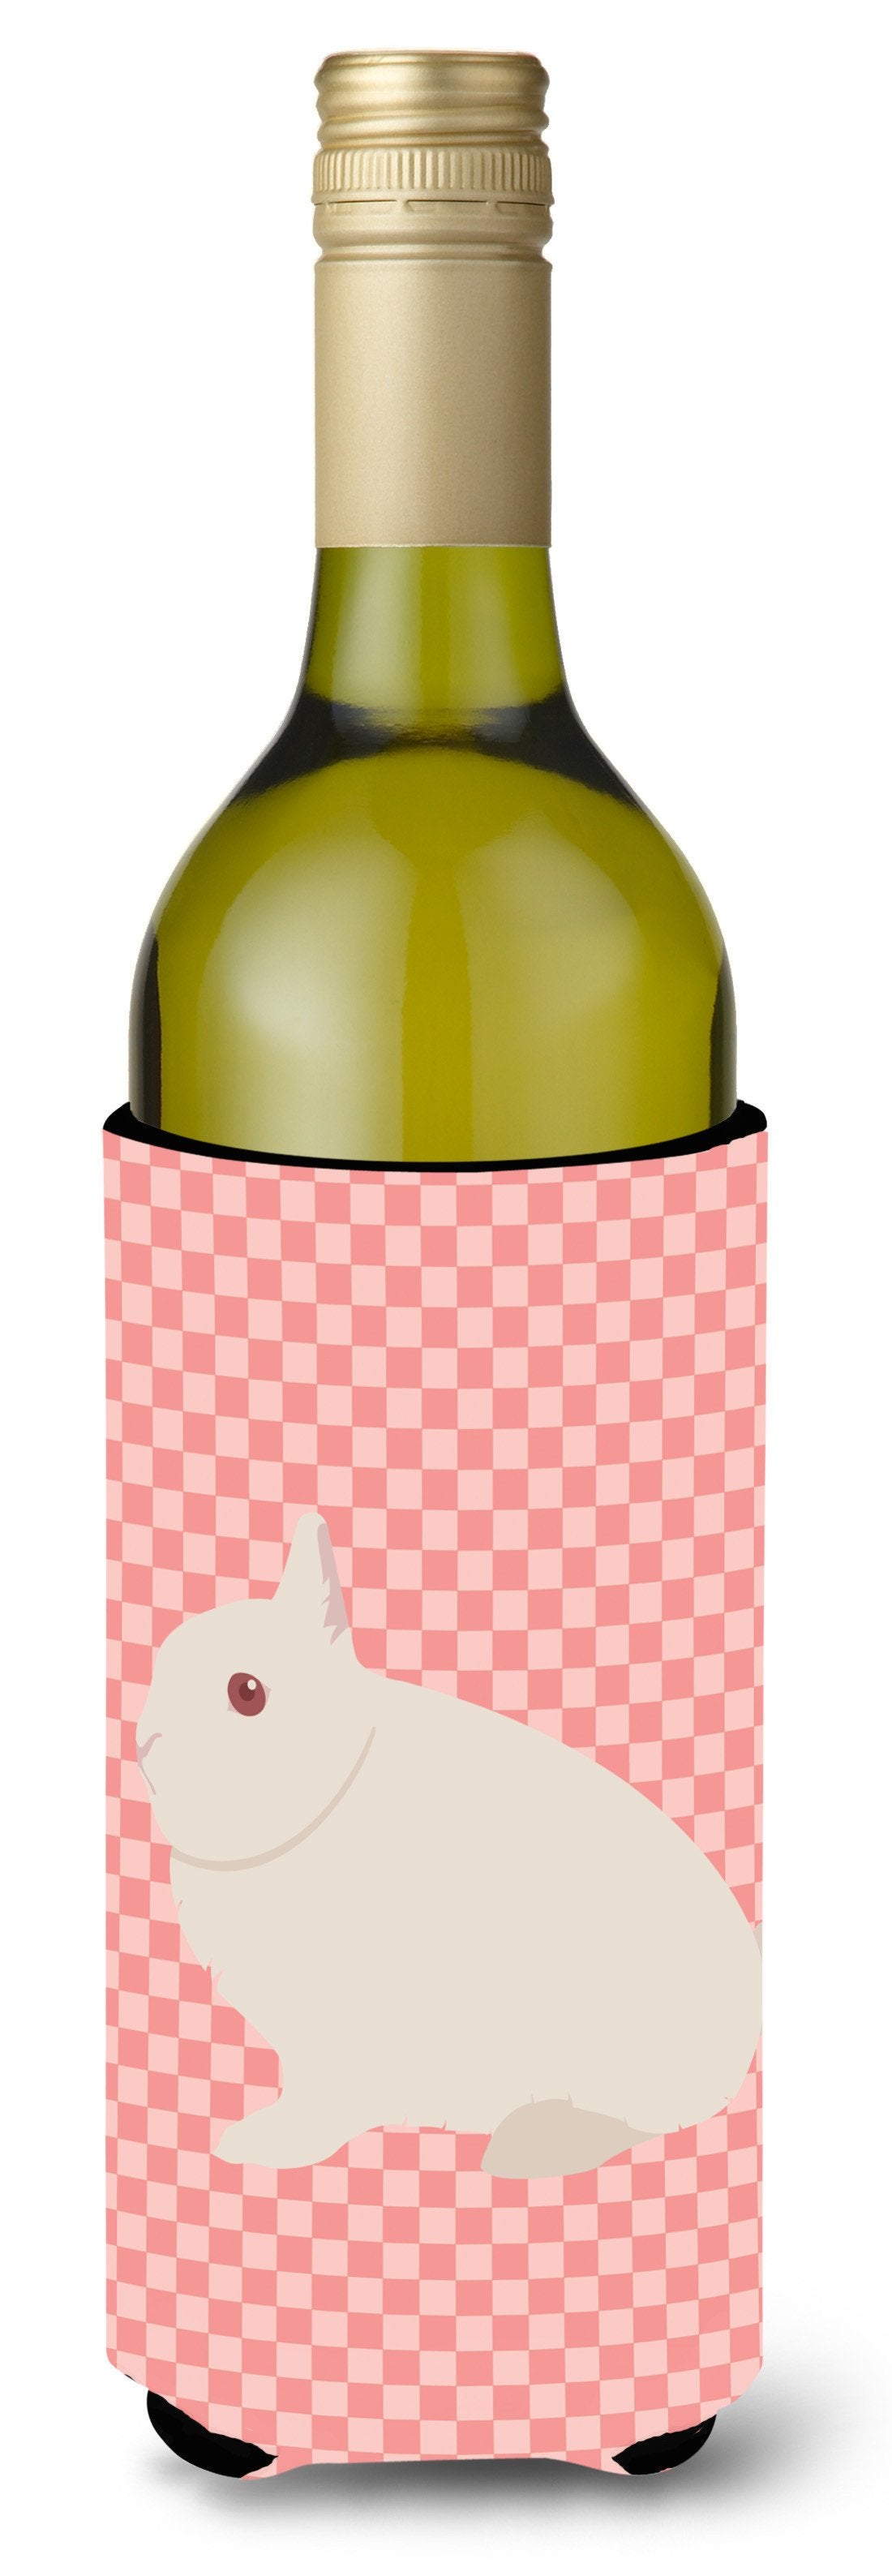 Hermelin Rabbit Pink Check Wine Bottle Beverge Insulator Hugger BB7964LITERK by Caroline's Treasures